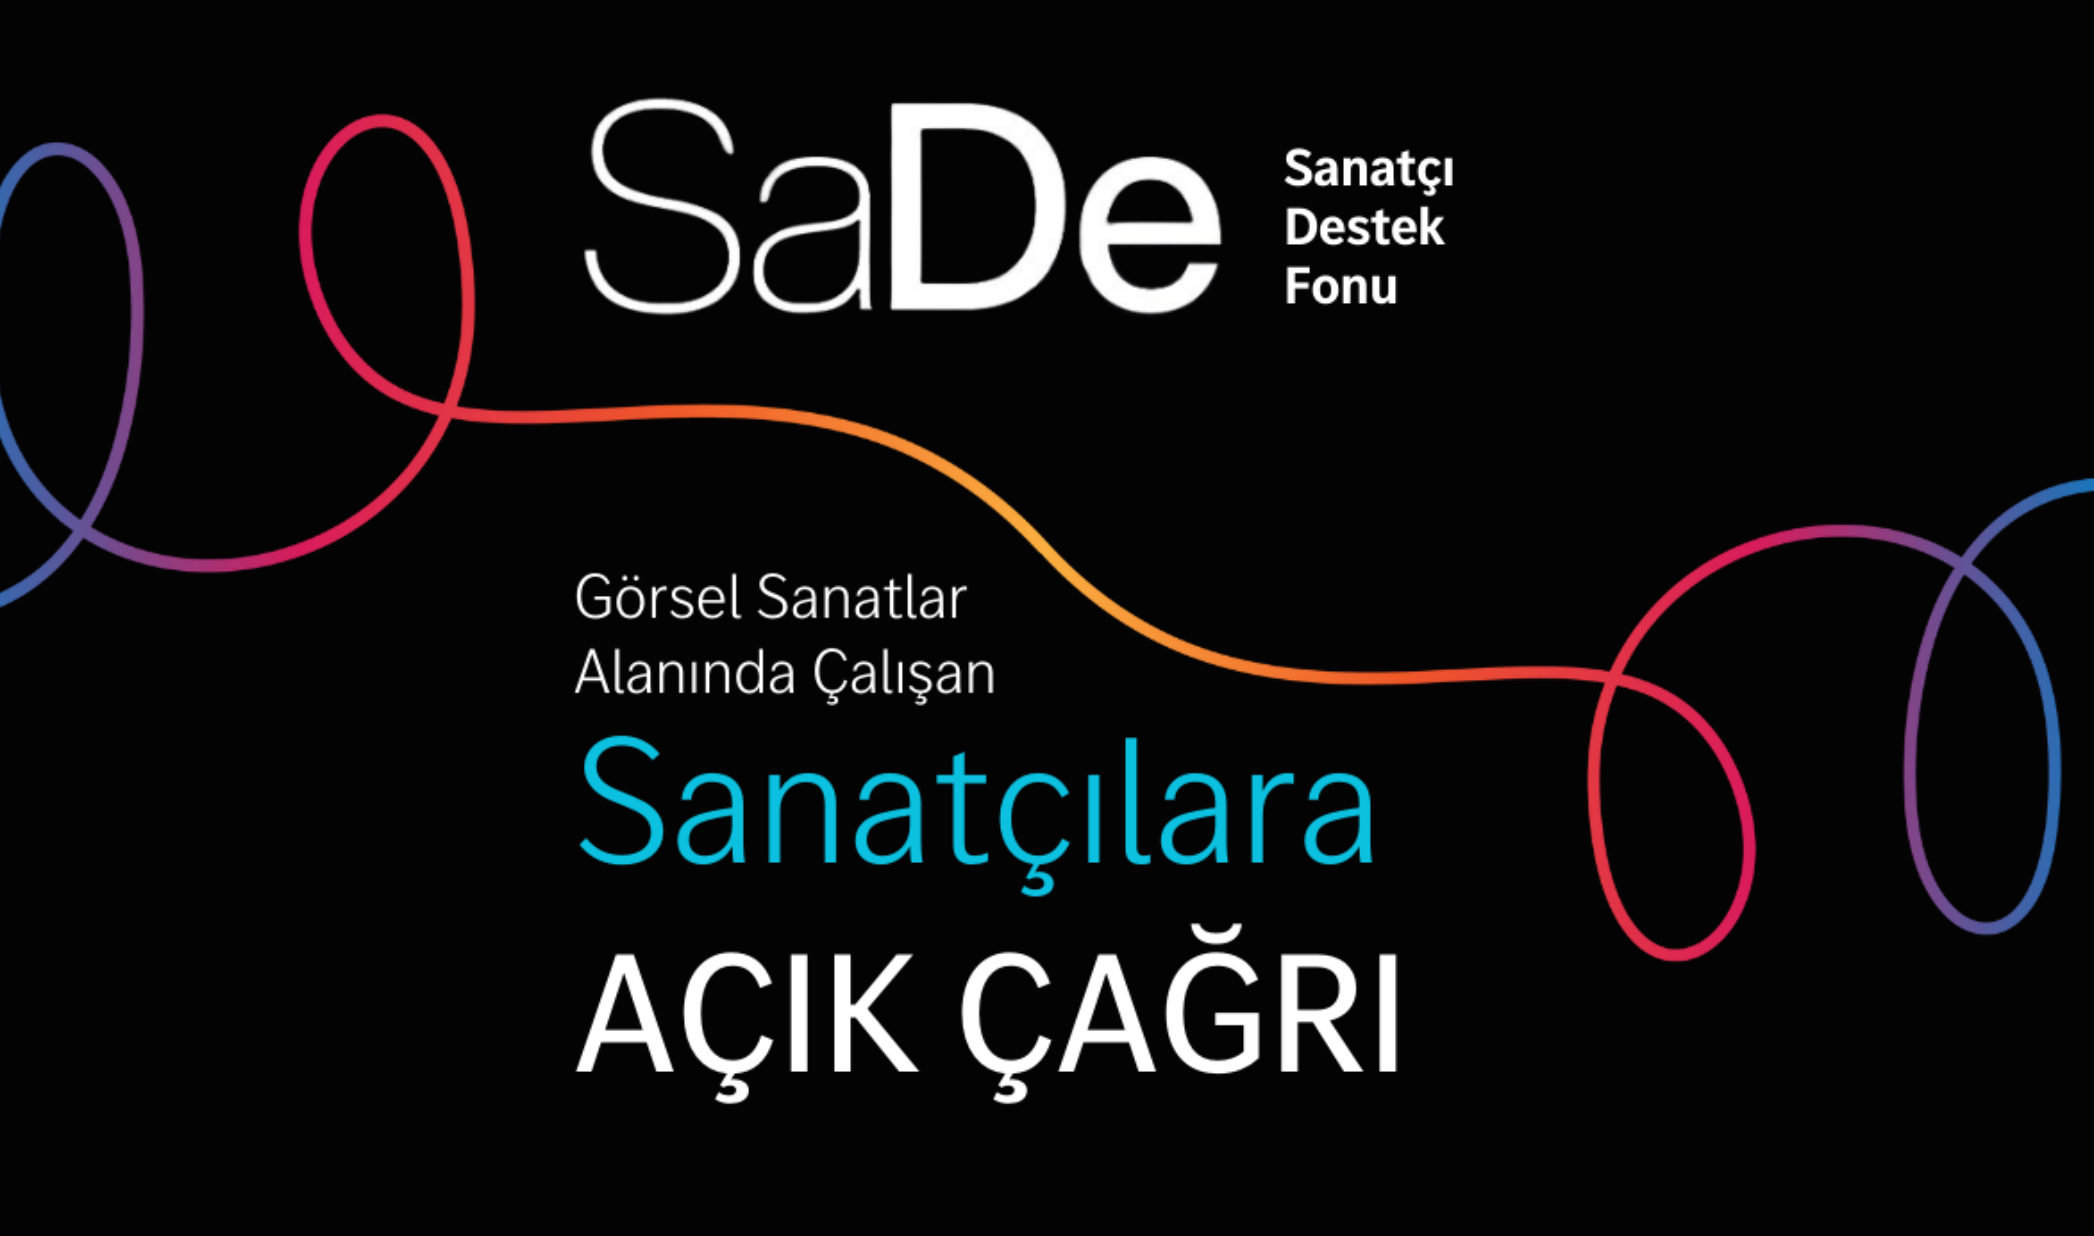  SaDe Programı'na başvurular 31 Mayıs'a kadar uzatıldı